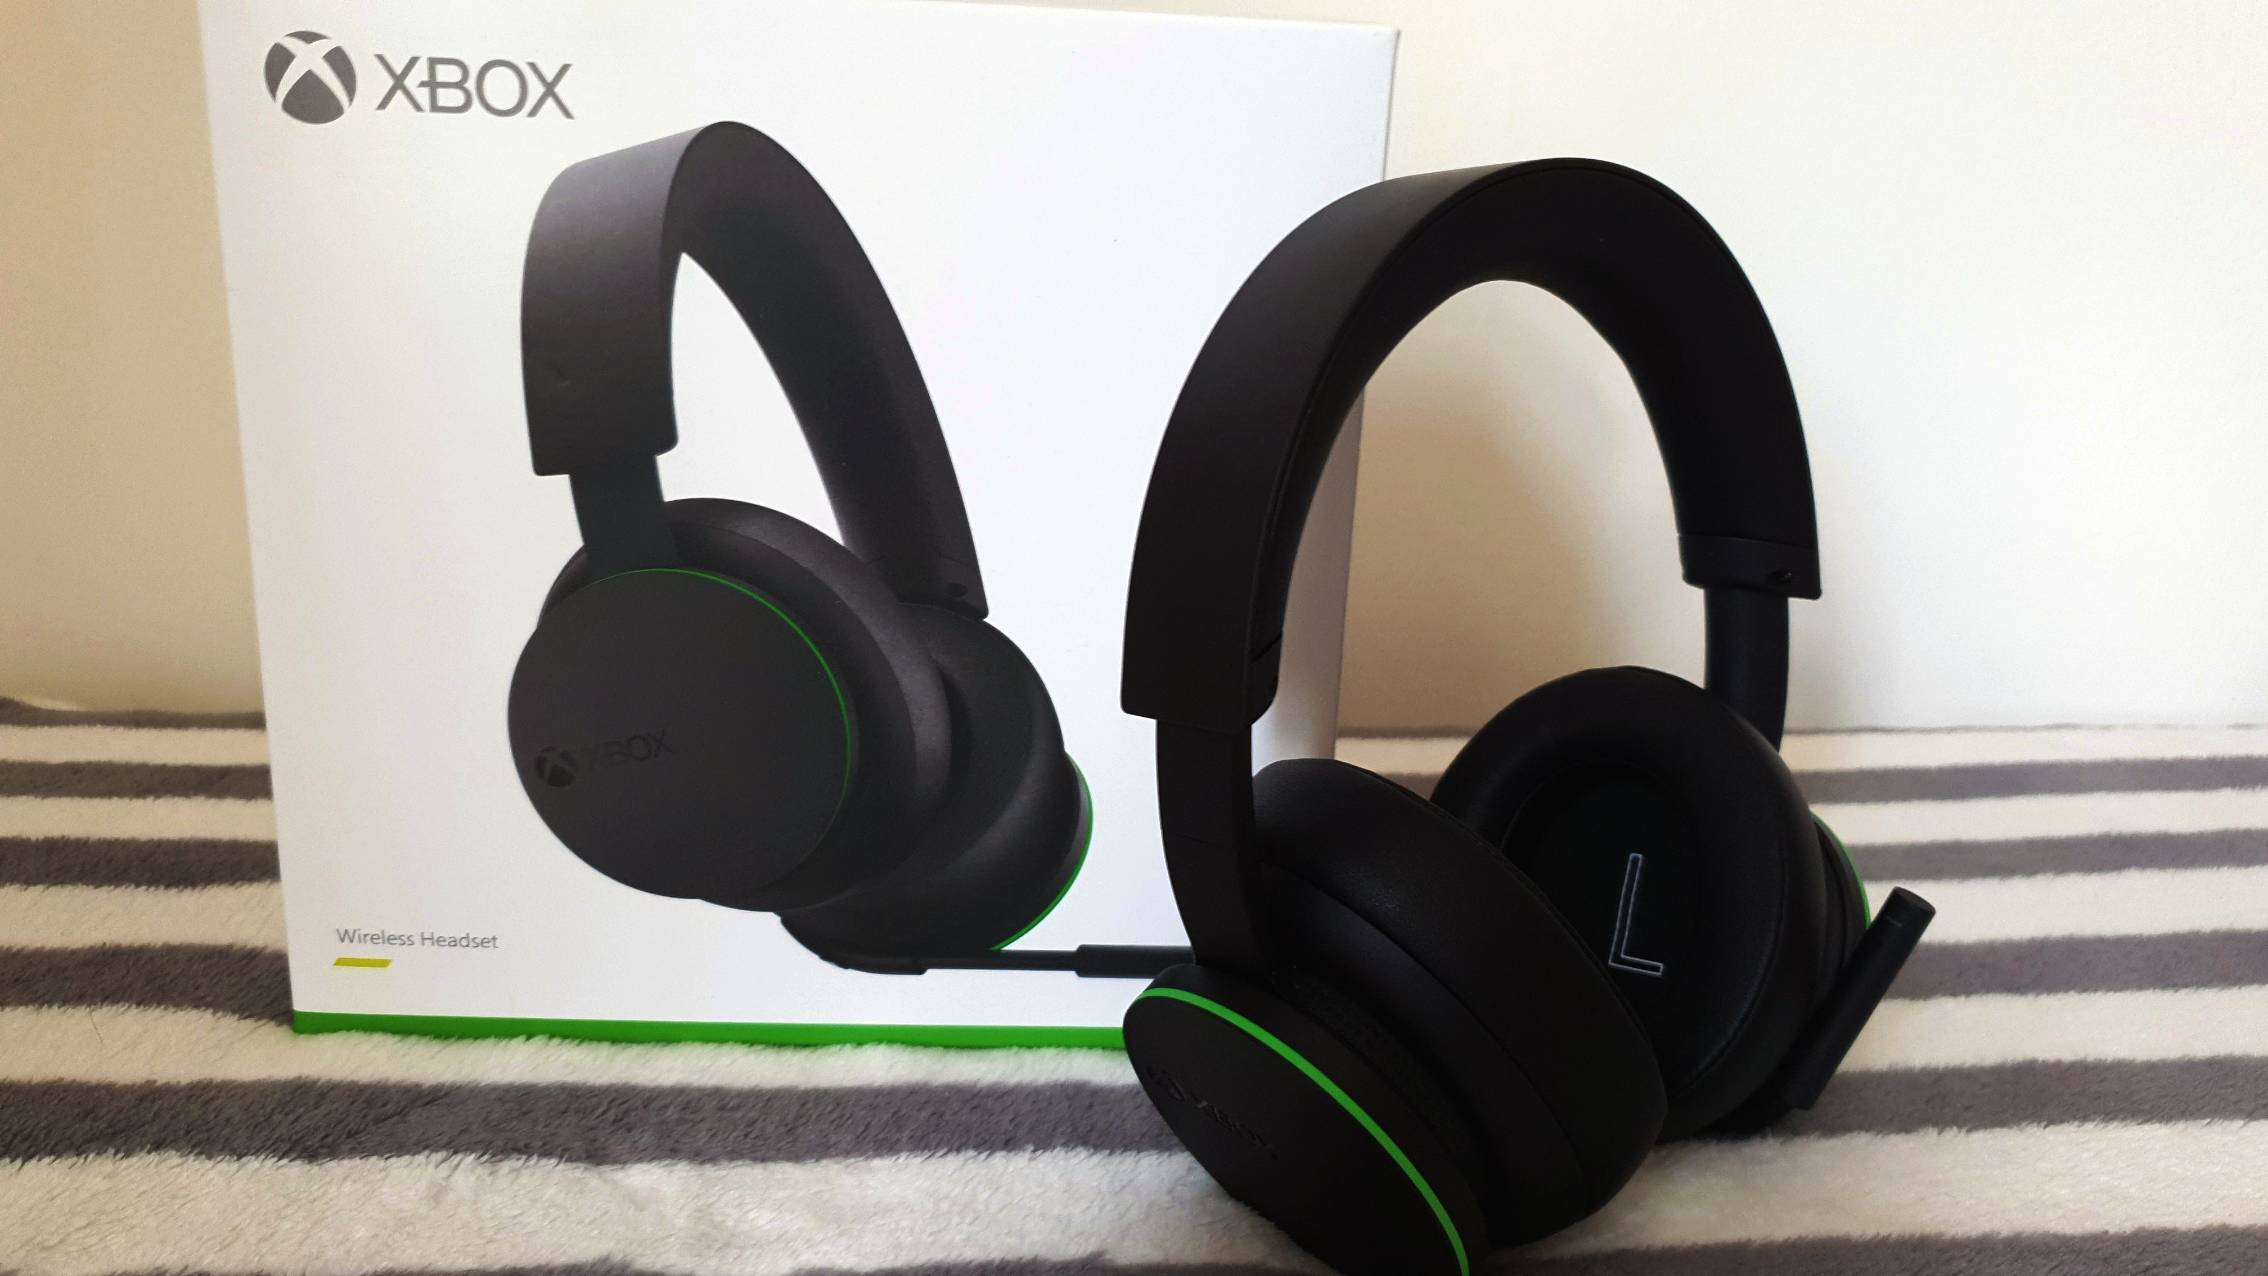 Beangstigend kwaadaardig Kers Xbox Wireless Headset review | TechRadar